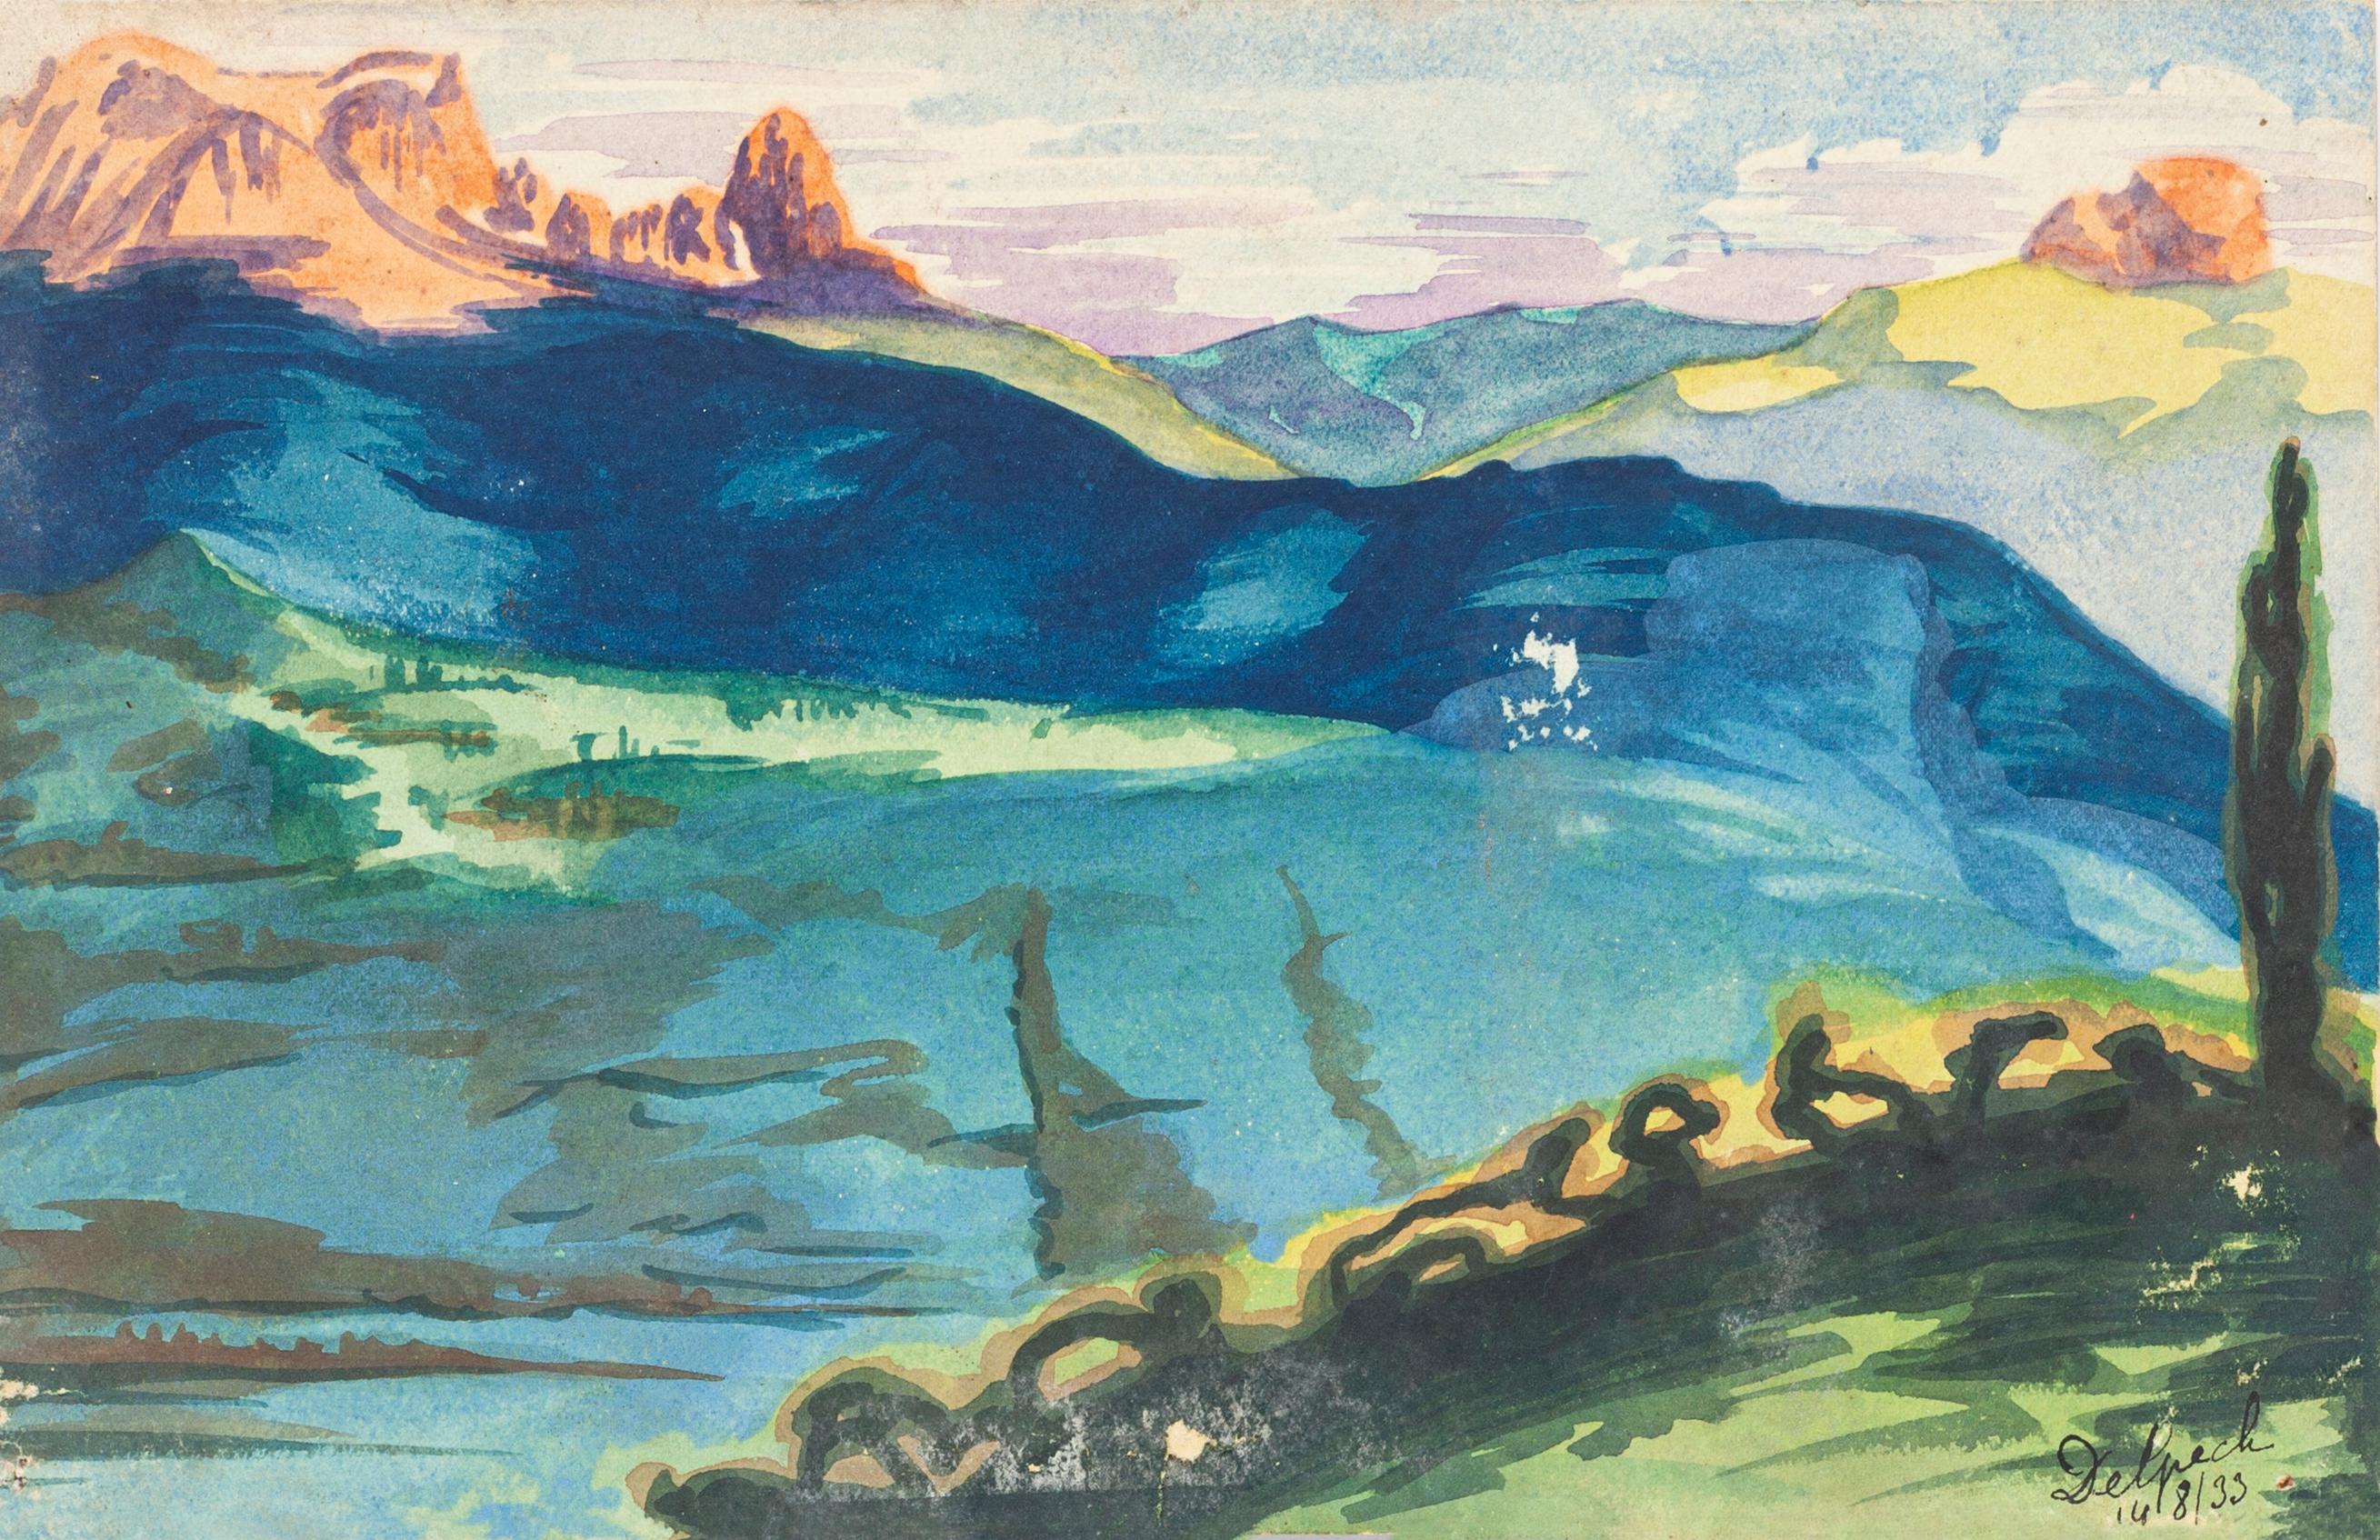 Jean Delpech Figurative Art - Landscape - Watercolor on Paper by J.-R. Delpech - 1933